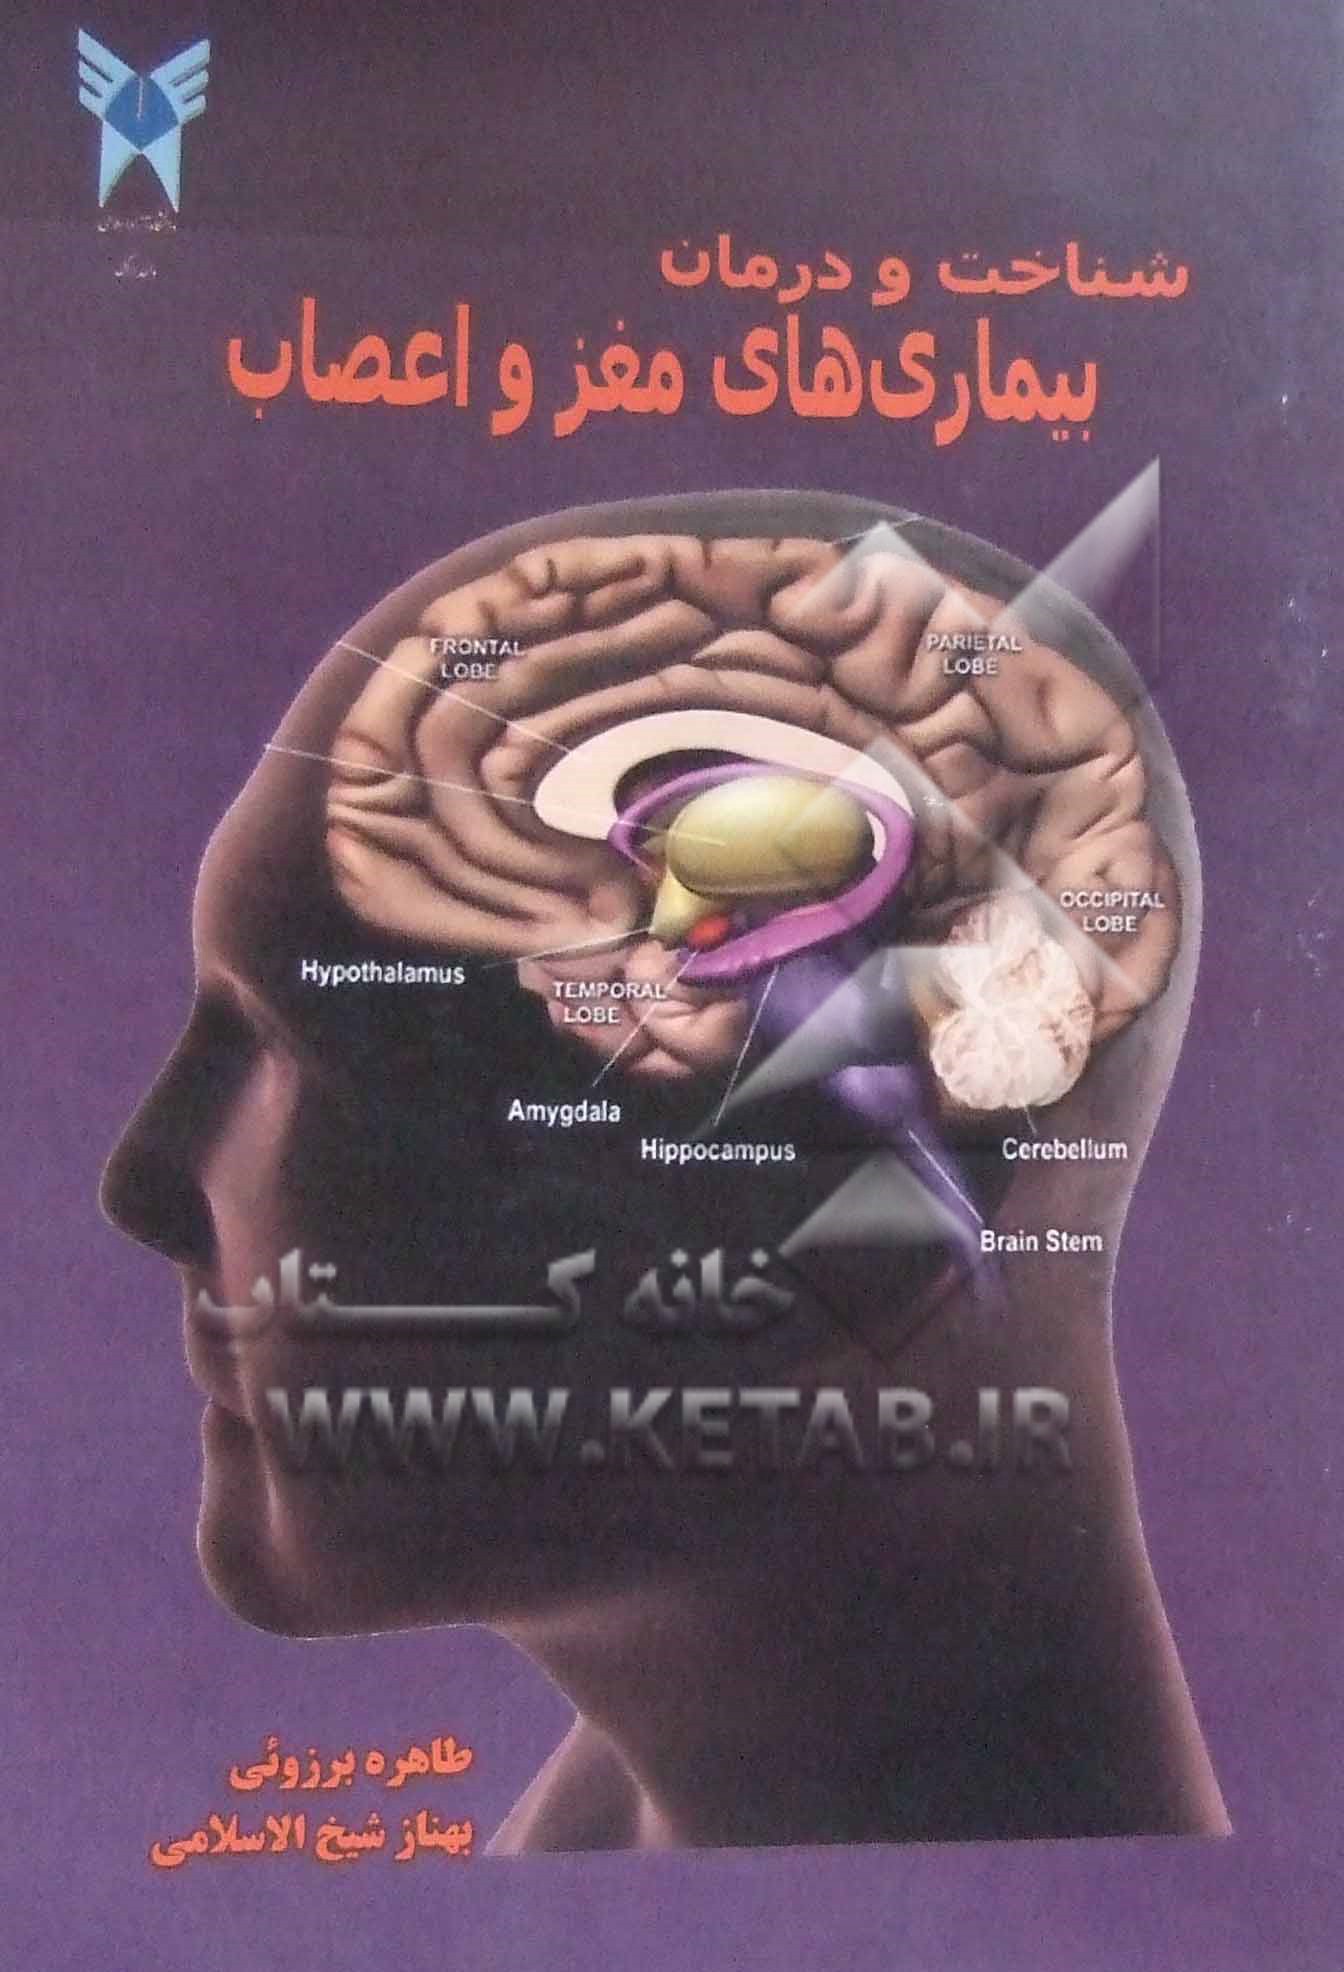 شناخت و درمان بيماري هاي مغز و اعصاب (مورد استفاده براي كليه دانشجويان پزشكي و پيراپزشكي)